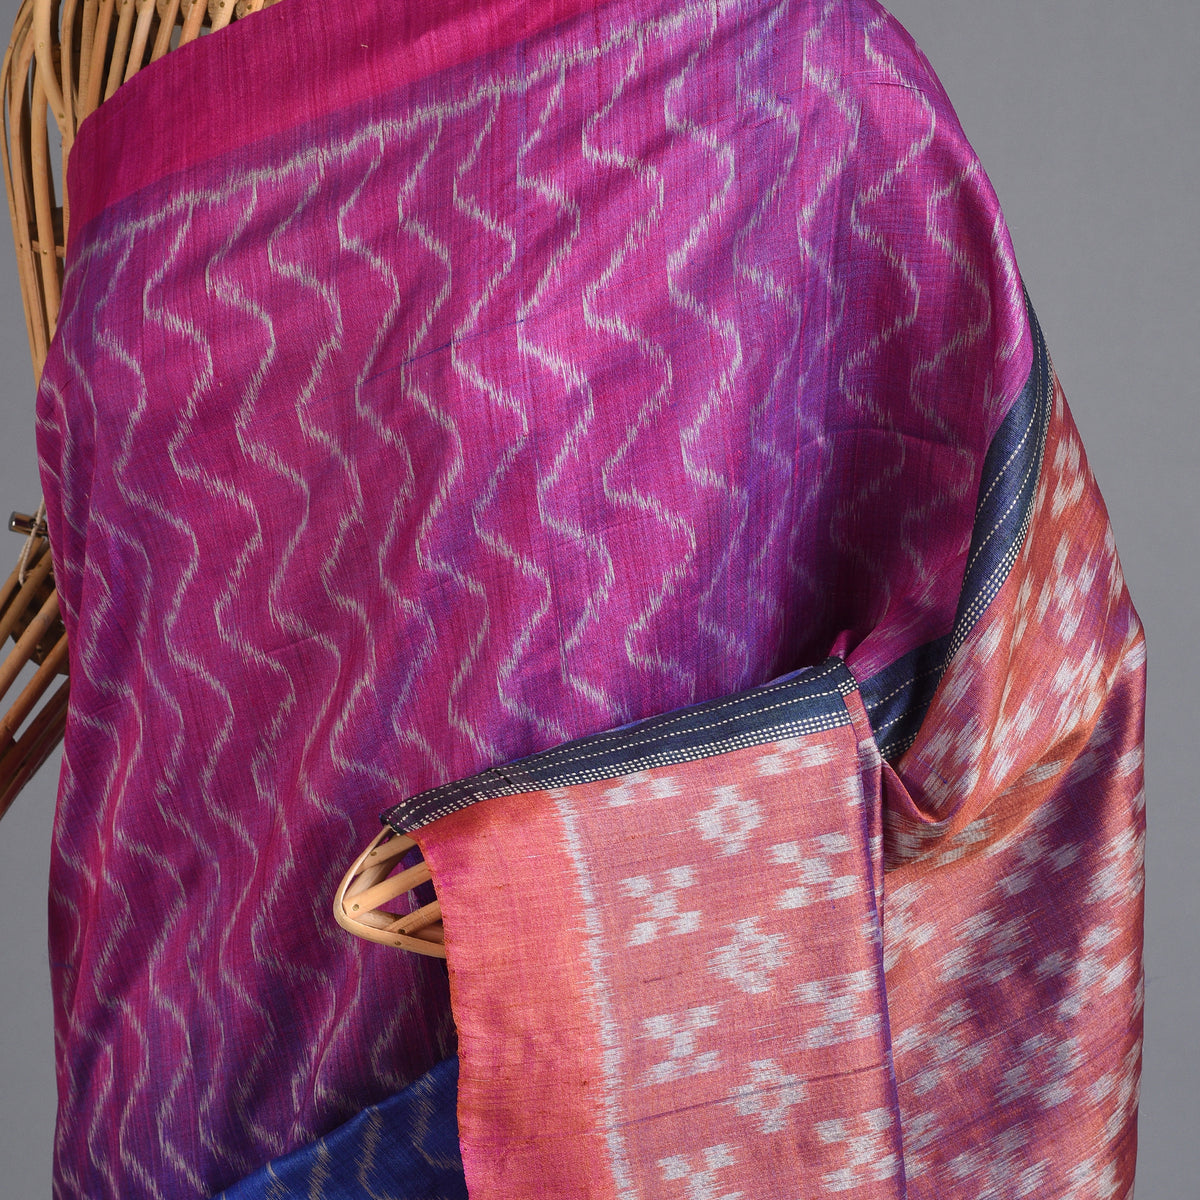 IKAT Tussar Tarang Handwoven Silk Saree - Multicolor